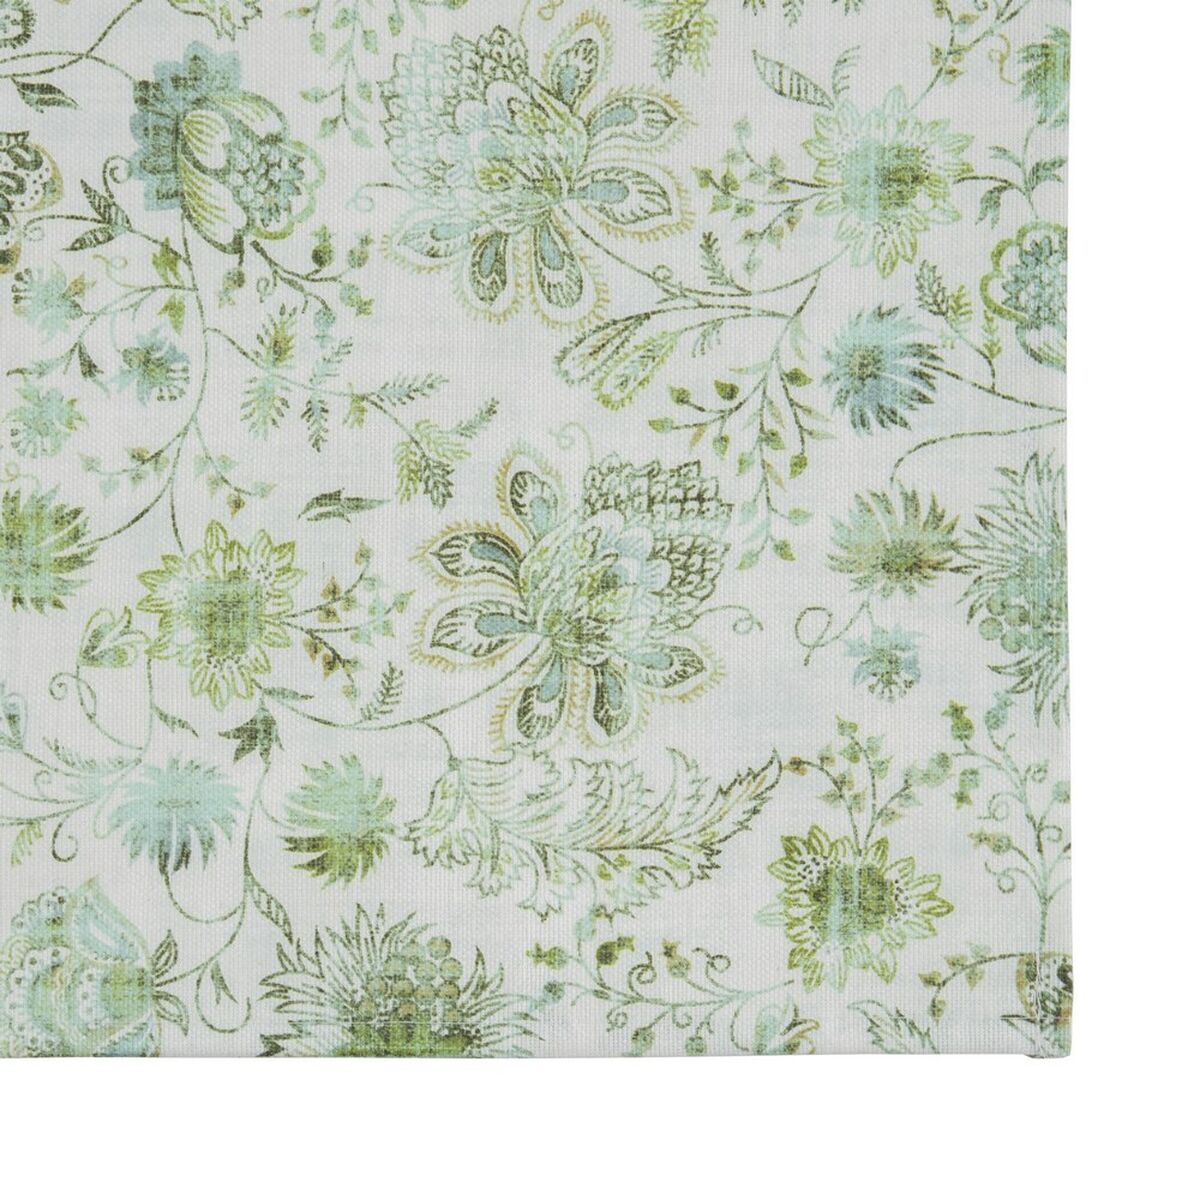 Tischdecke 140 x 140 cm Polyester grün 100 % Baumwolle